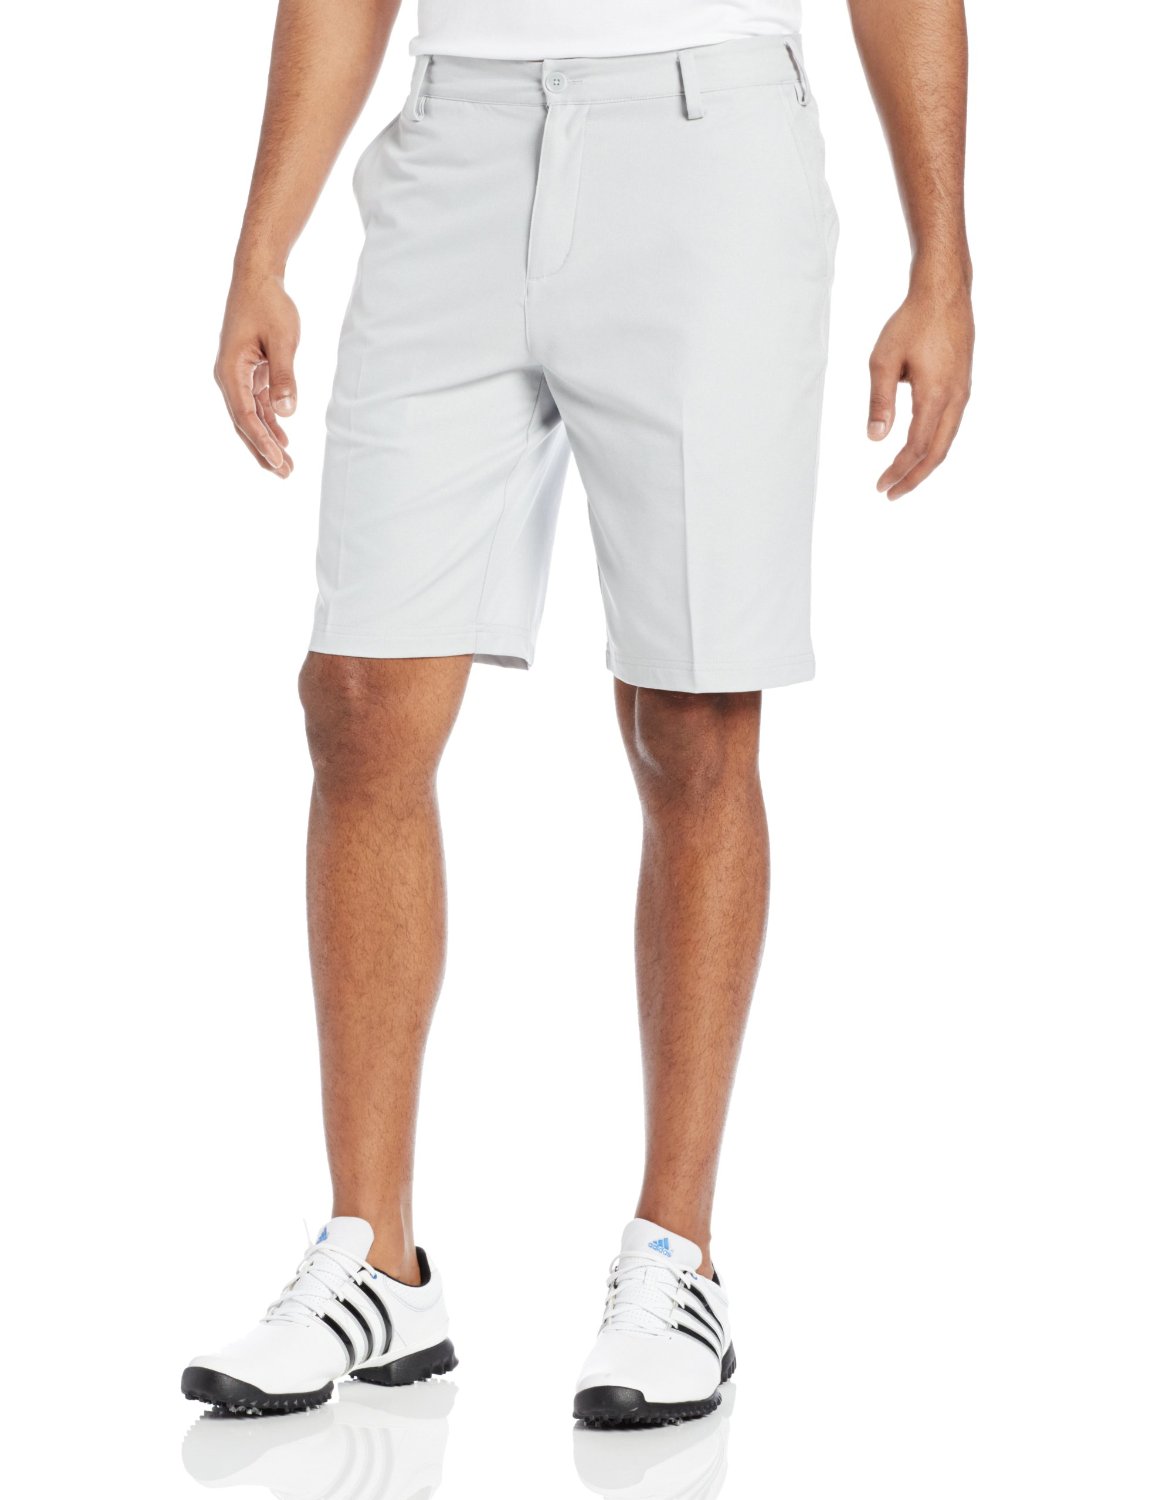 Adidas Mens Heathered Golf Shorts